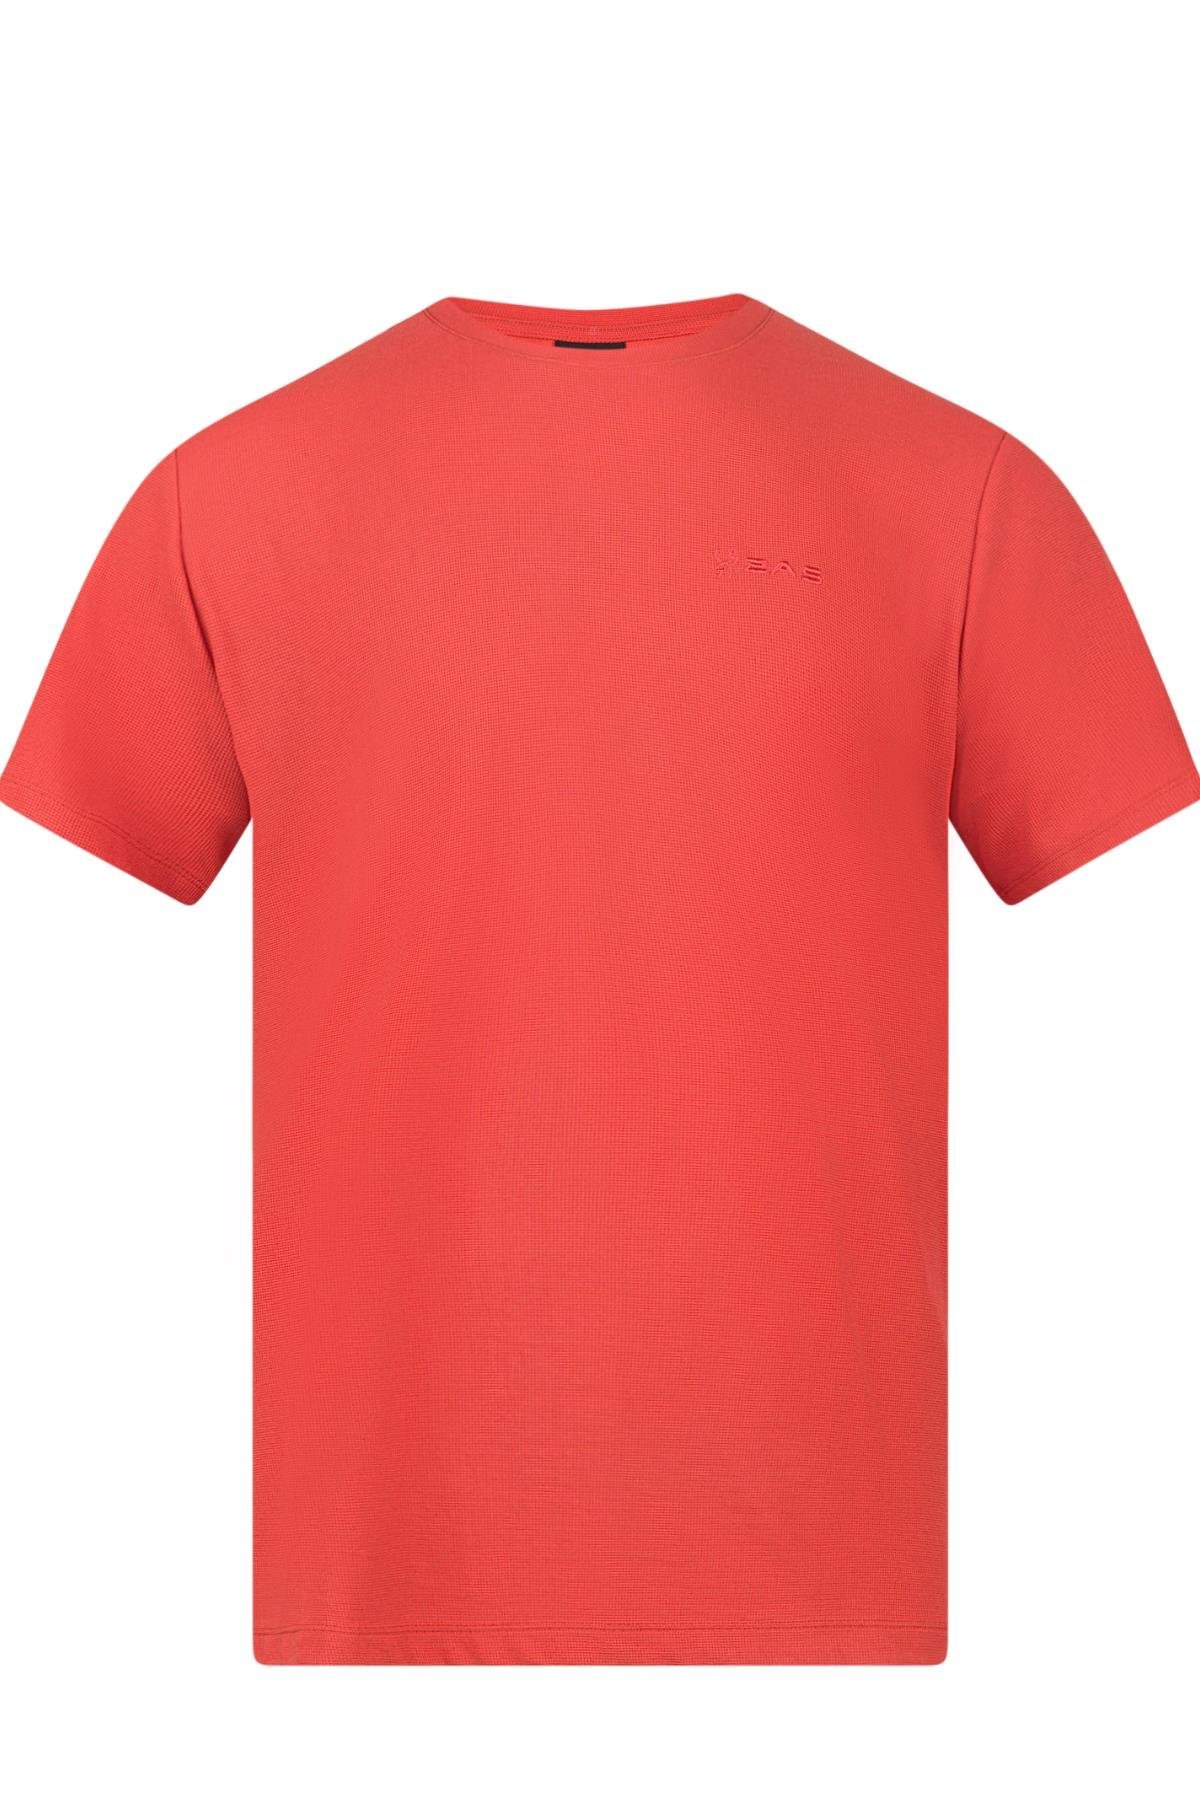 2AS Kalei Sıfır Yaka T-Shirt Kırmızı